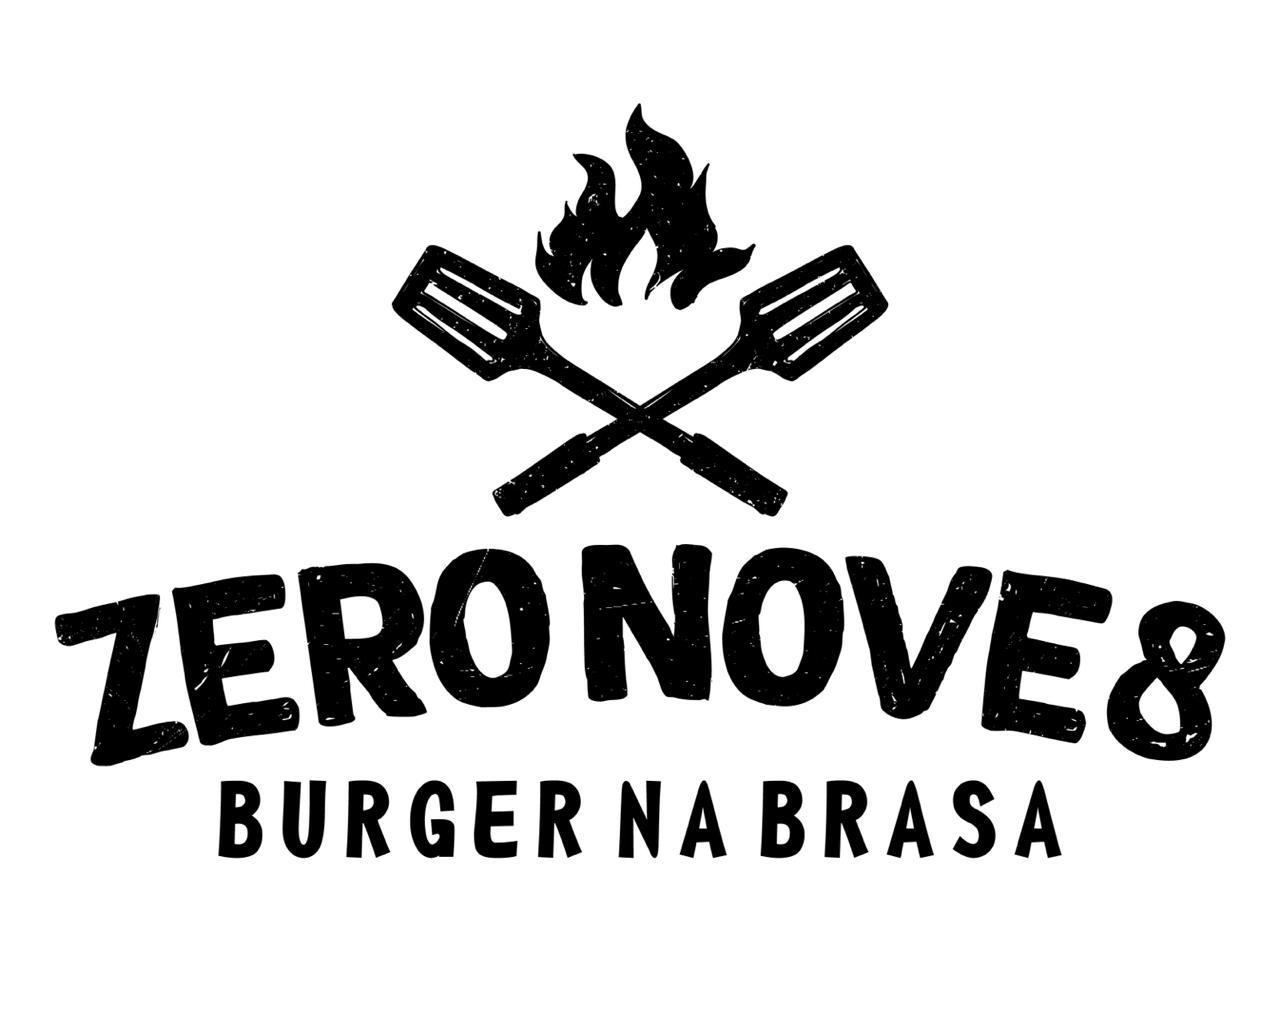 Logo-Hamburgueria - zeronove8